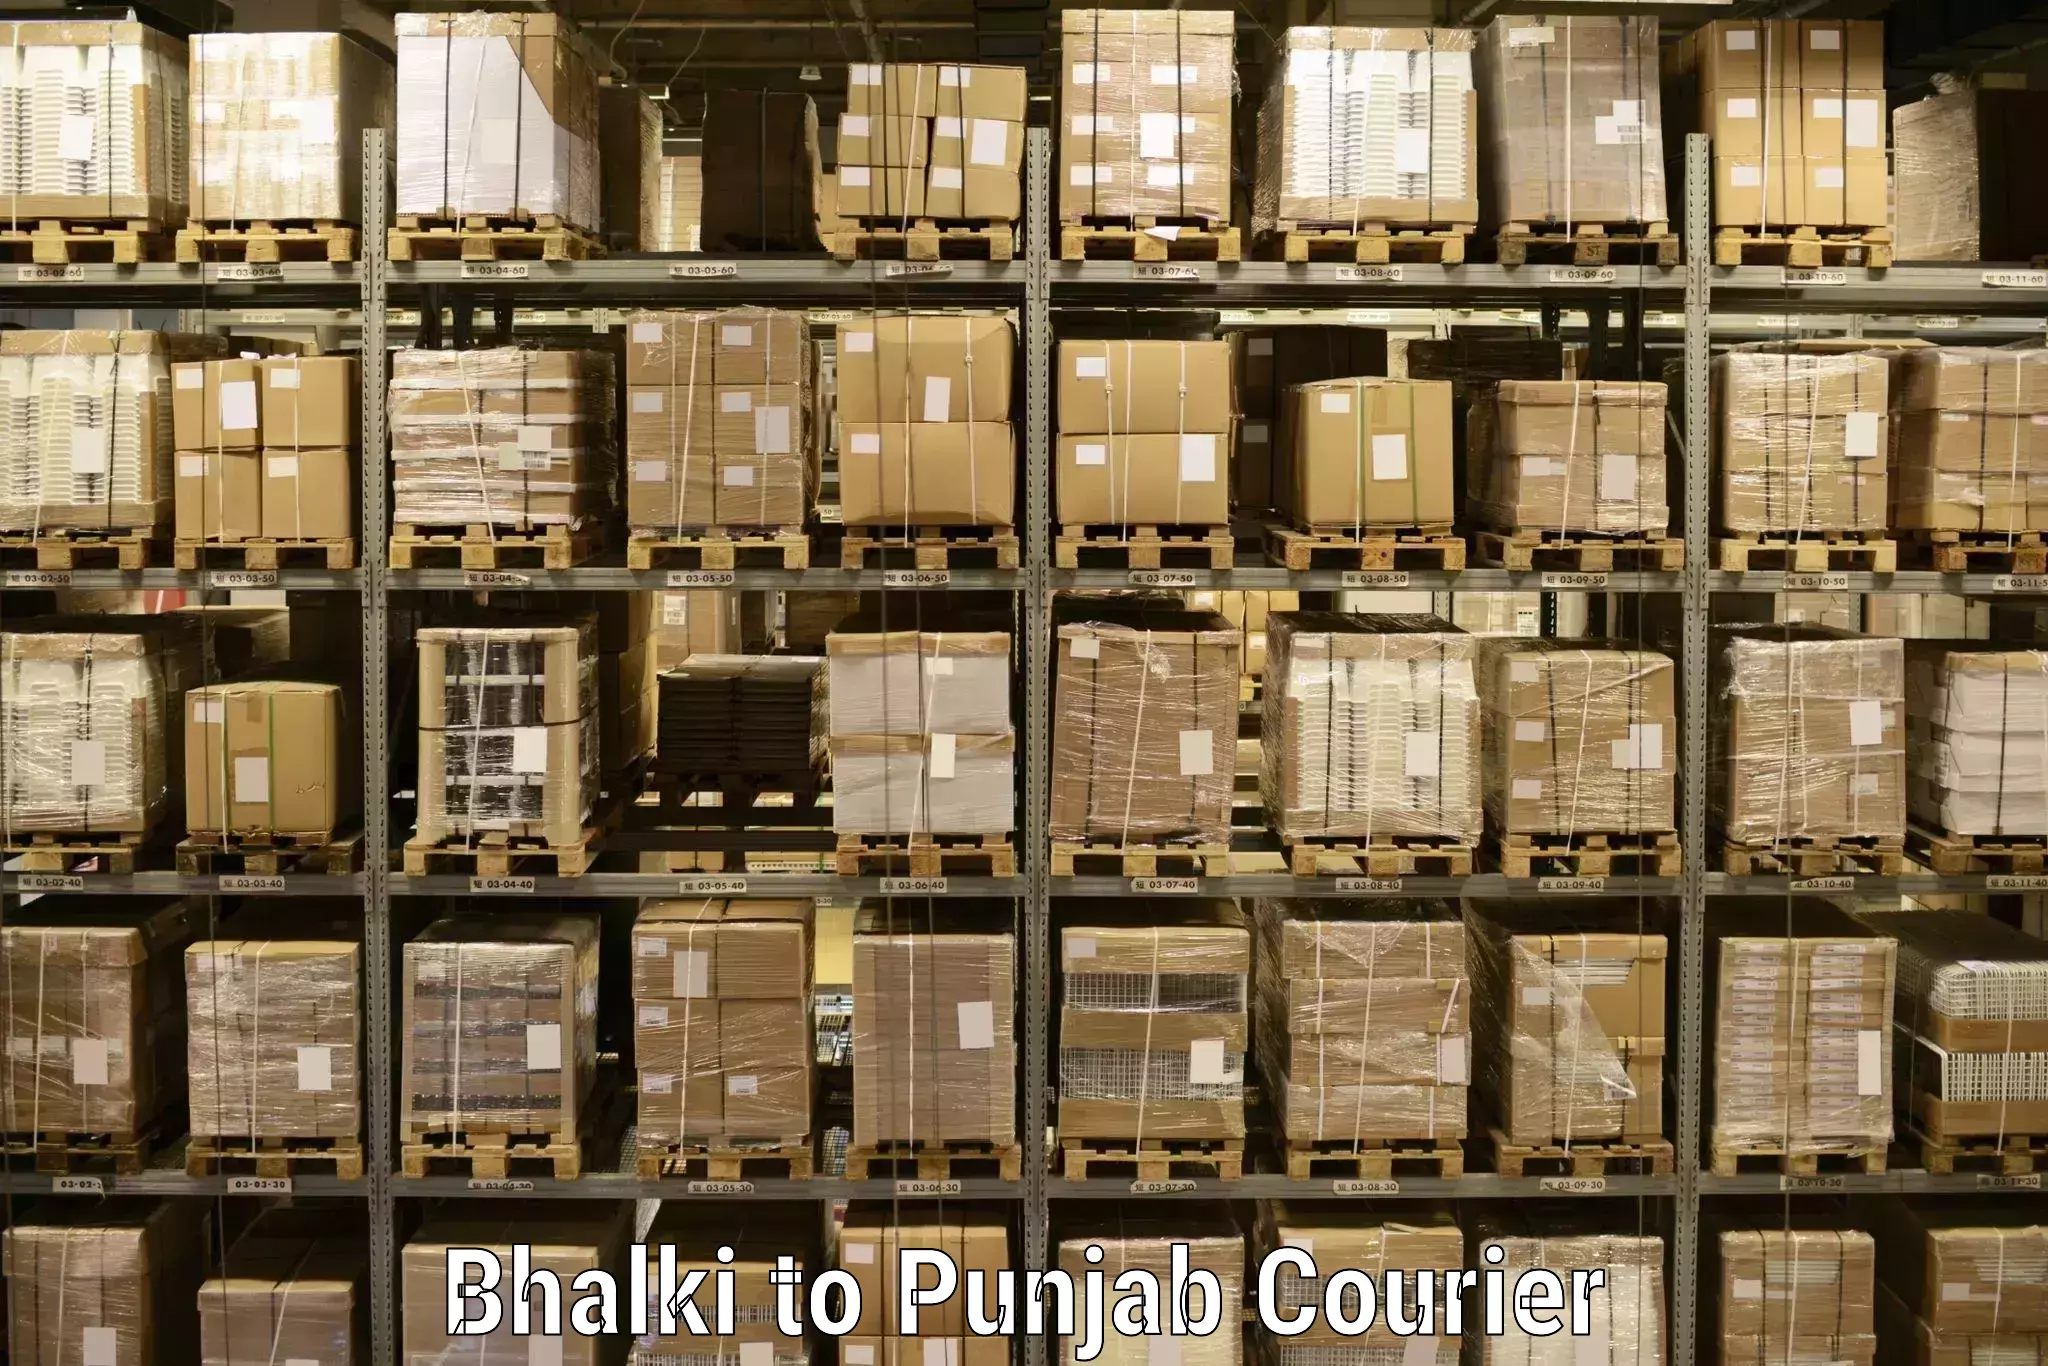 Online shipping calculator Bhalki to Central University of Punjab Bathinda